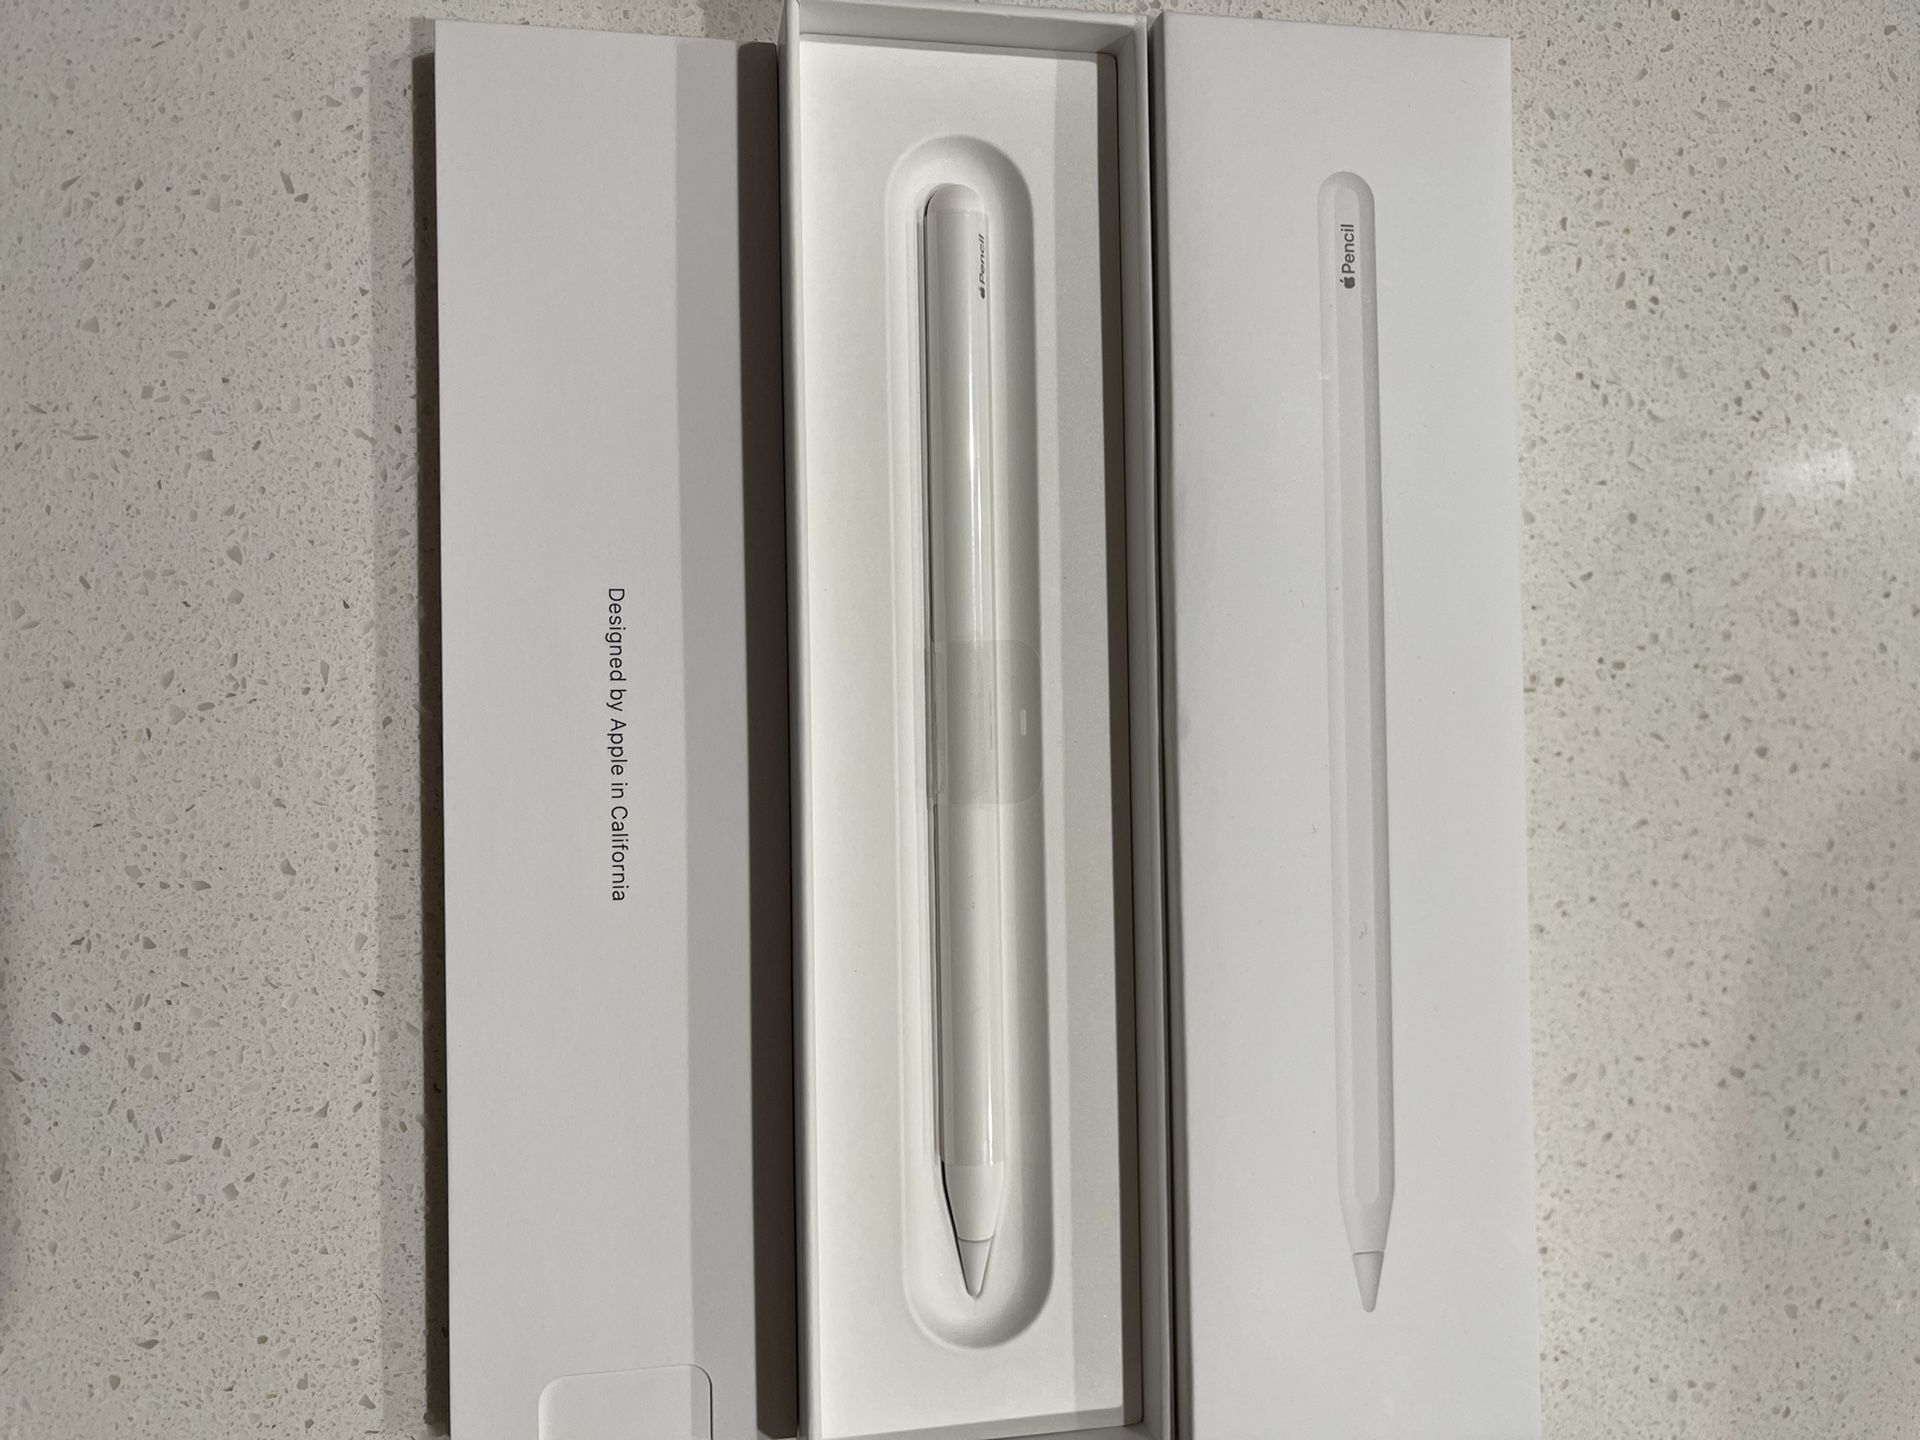 Apple Pen 2nd Generation for Sale in Avondale, AZ - OfferUp